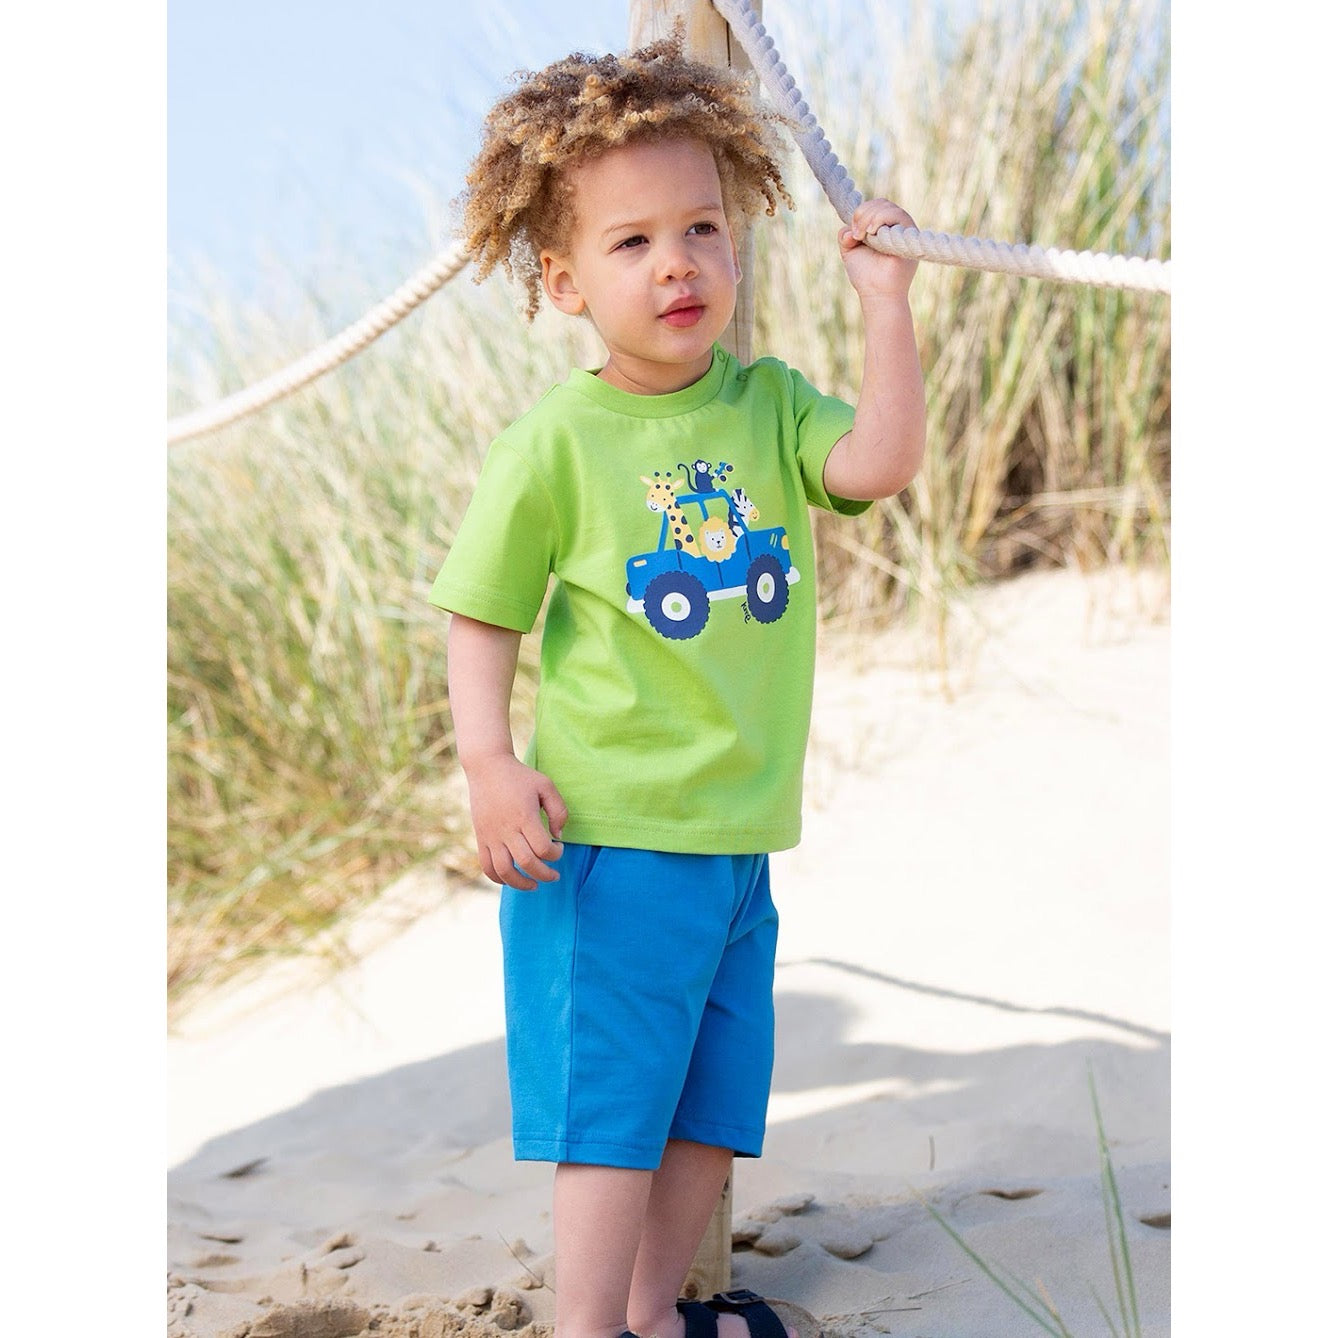 Kite Safari Infant T-Shirt 9839 Clothing 3-6M / Lime,6-9M / Lime,9-12M / Lime,12-18M / Lime,18-24M/2Y / Lime,3YRS / Lime,4YRS / Lime,5YRS / Lime